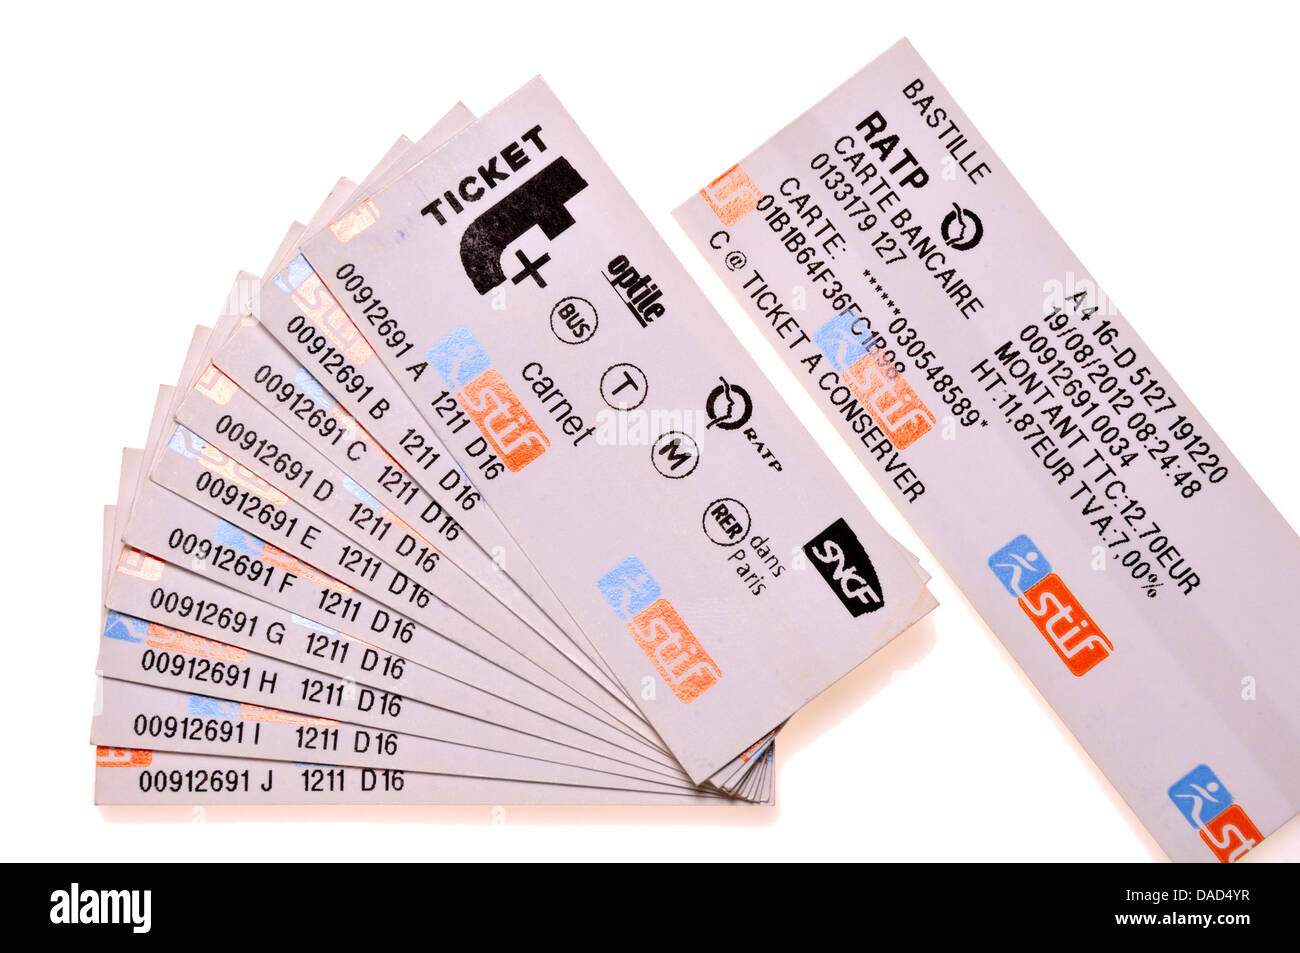 Los billetes de metro de París. Un "carnet" - 10 billetes comprados juntos en el descuento Foto de stock